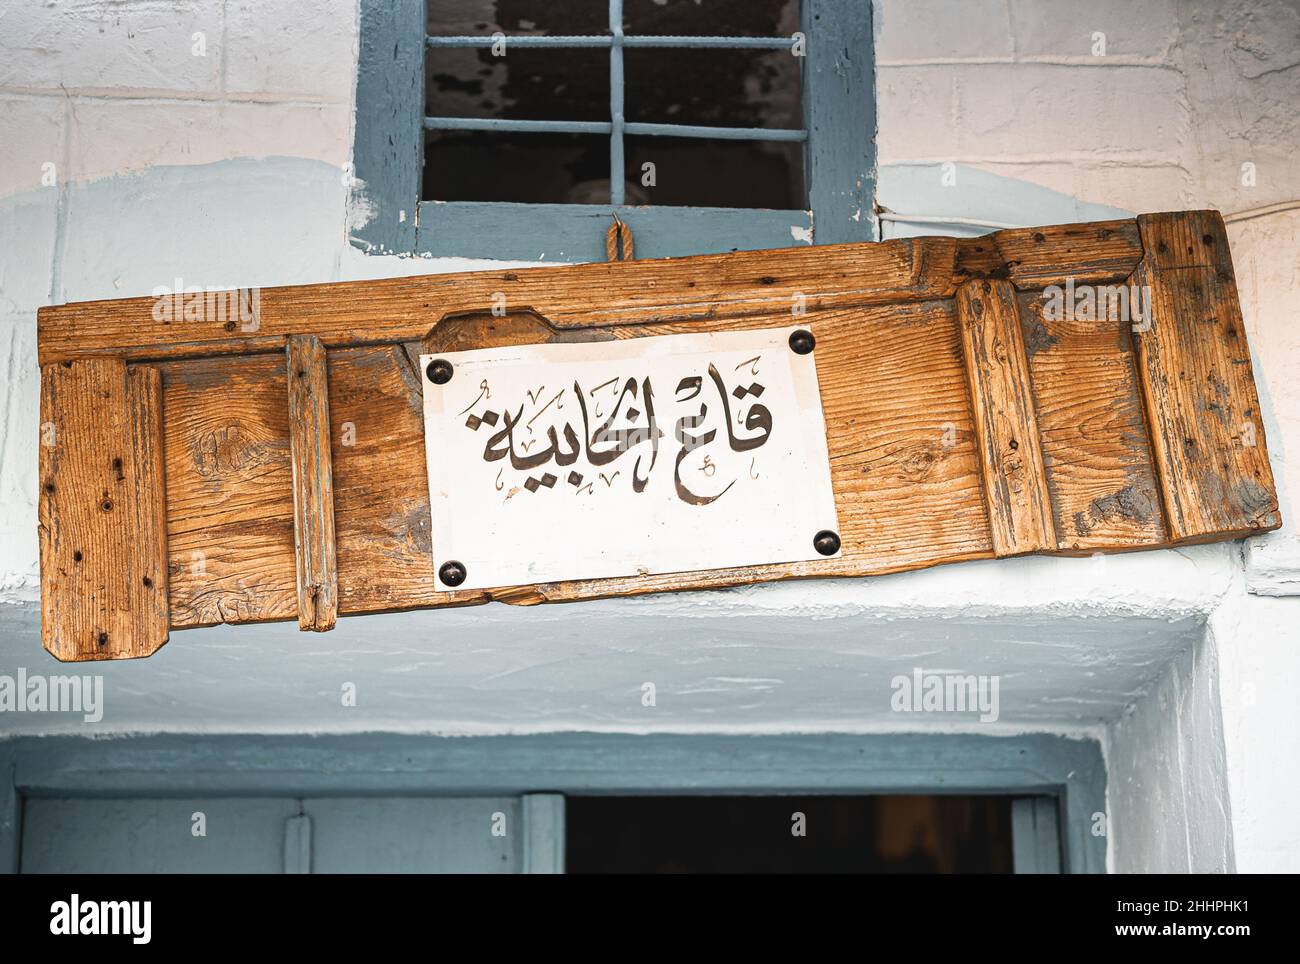 Un nom de magasin traditionnel à Tunis écrit sur une vieille porte en bois dans une calligraphie arabe Banque D'Images